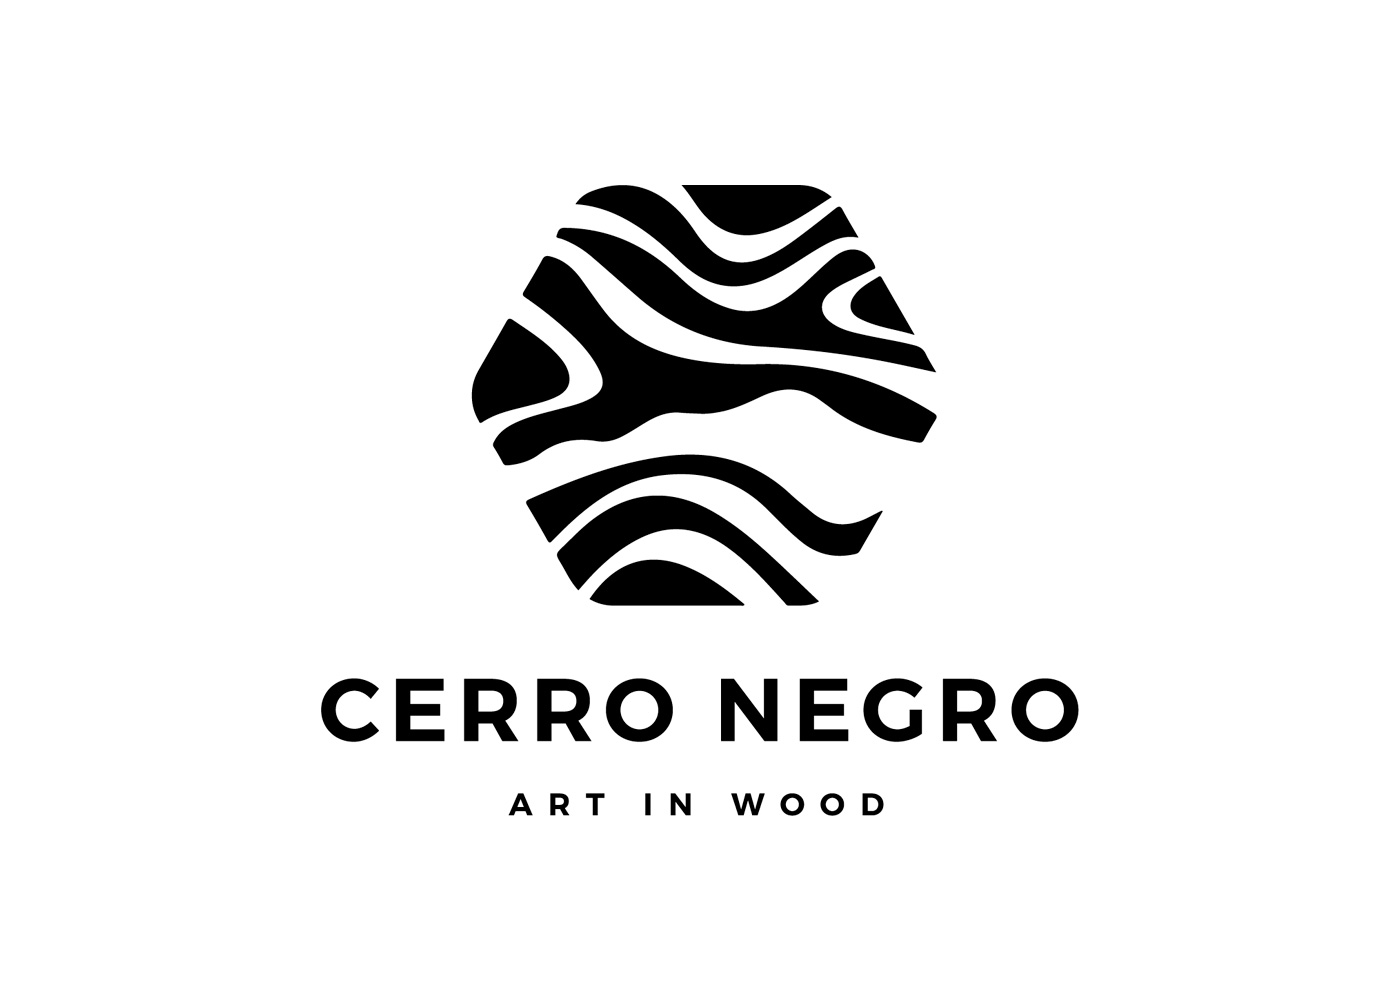 Logo Cerro Negro